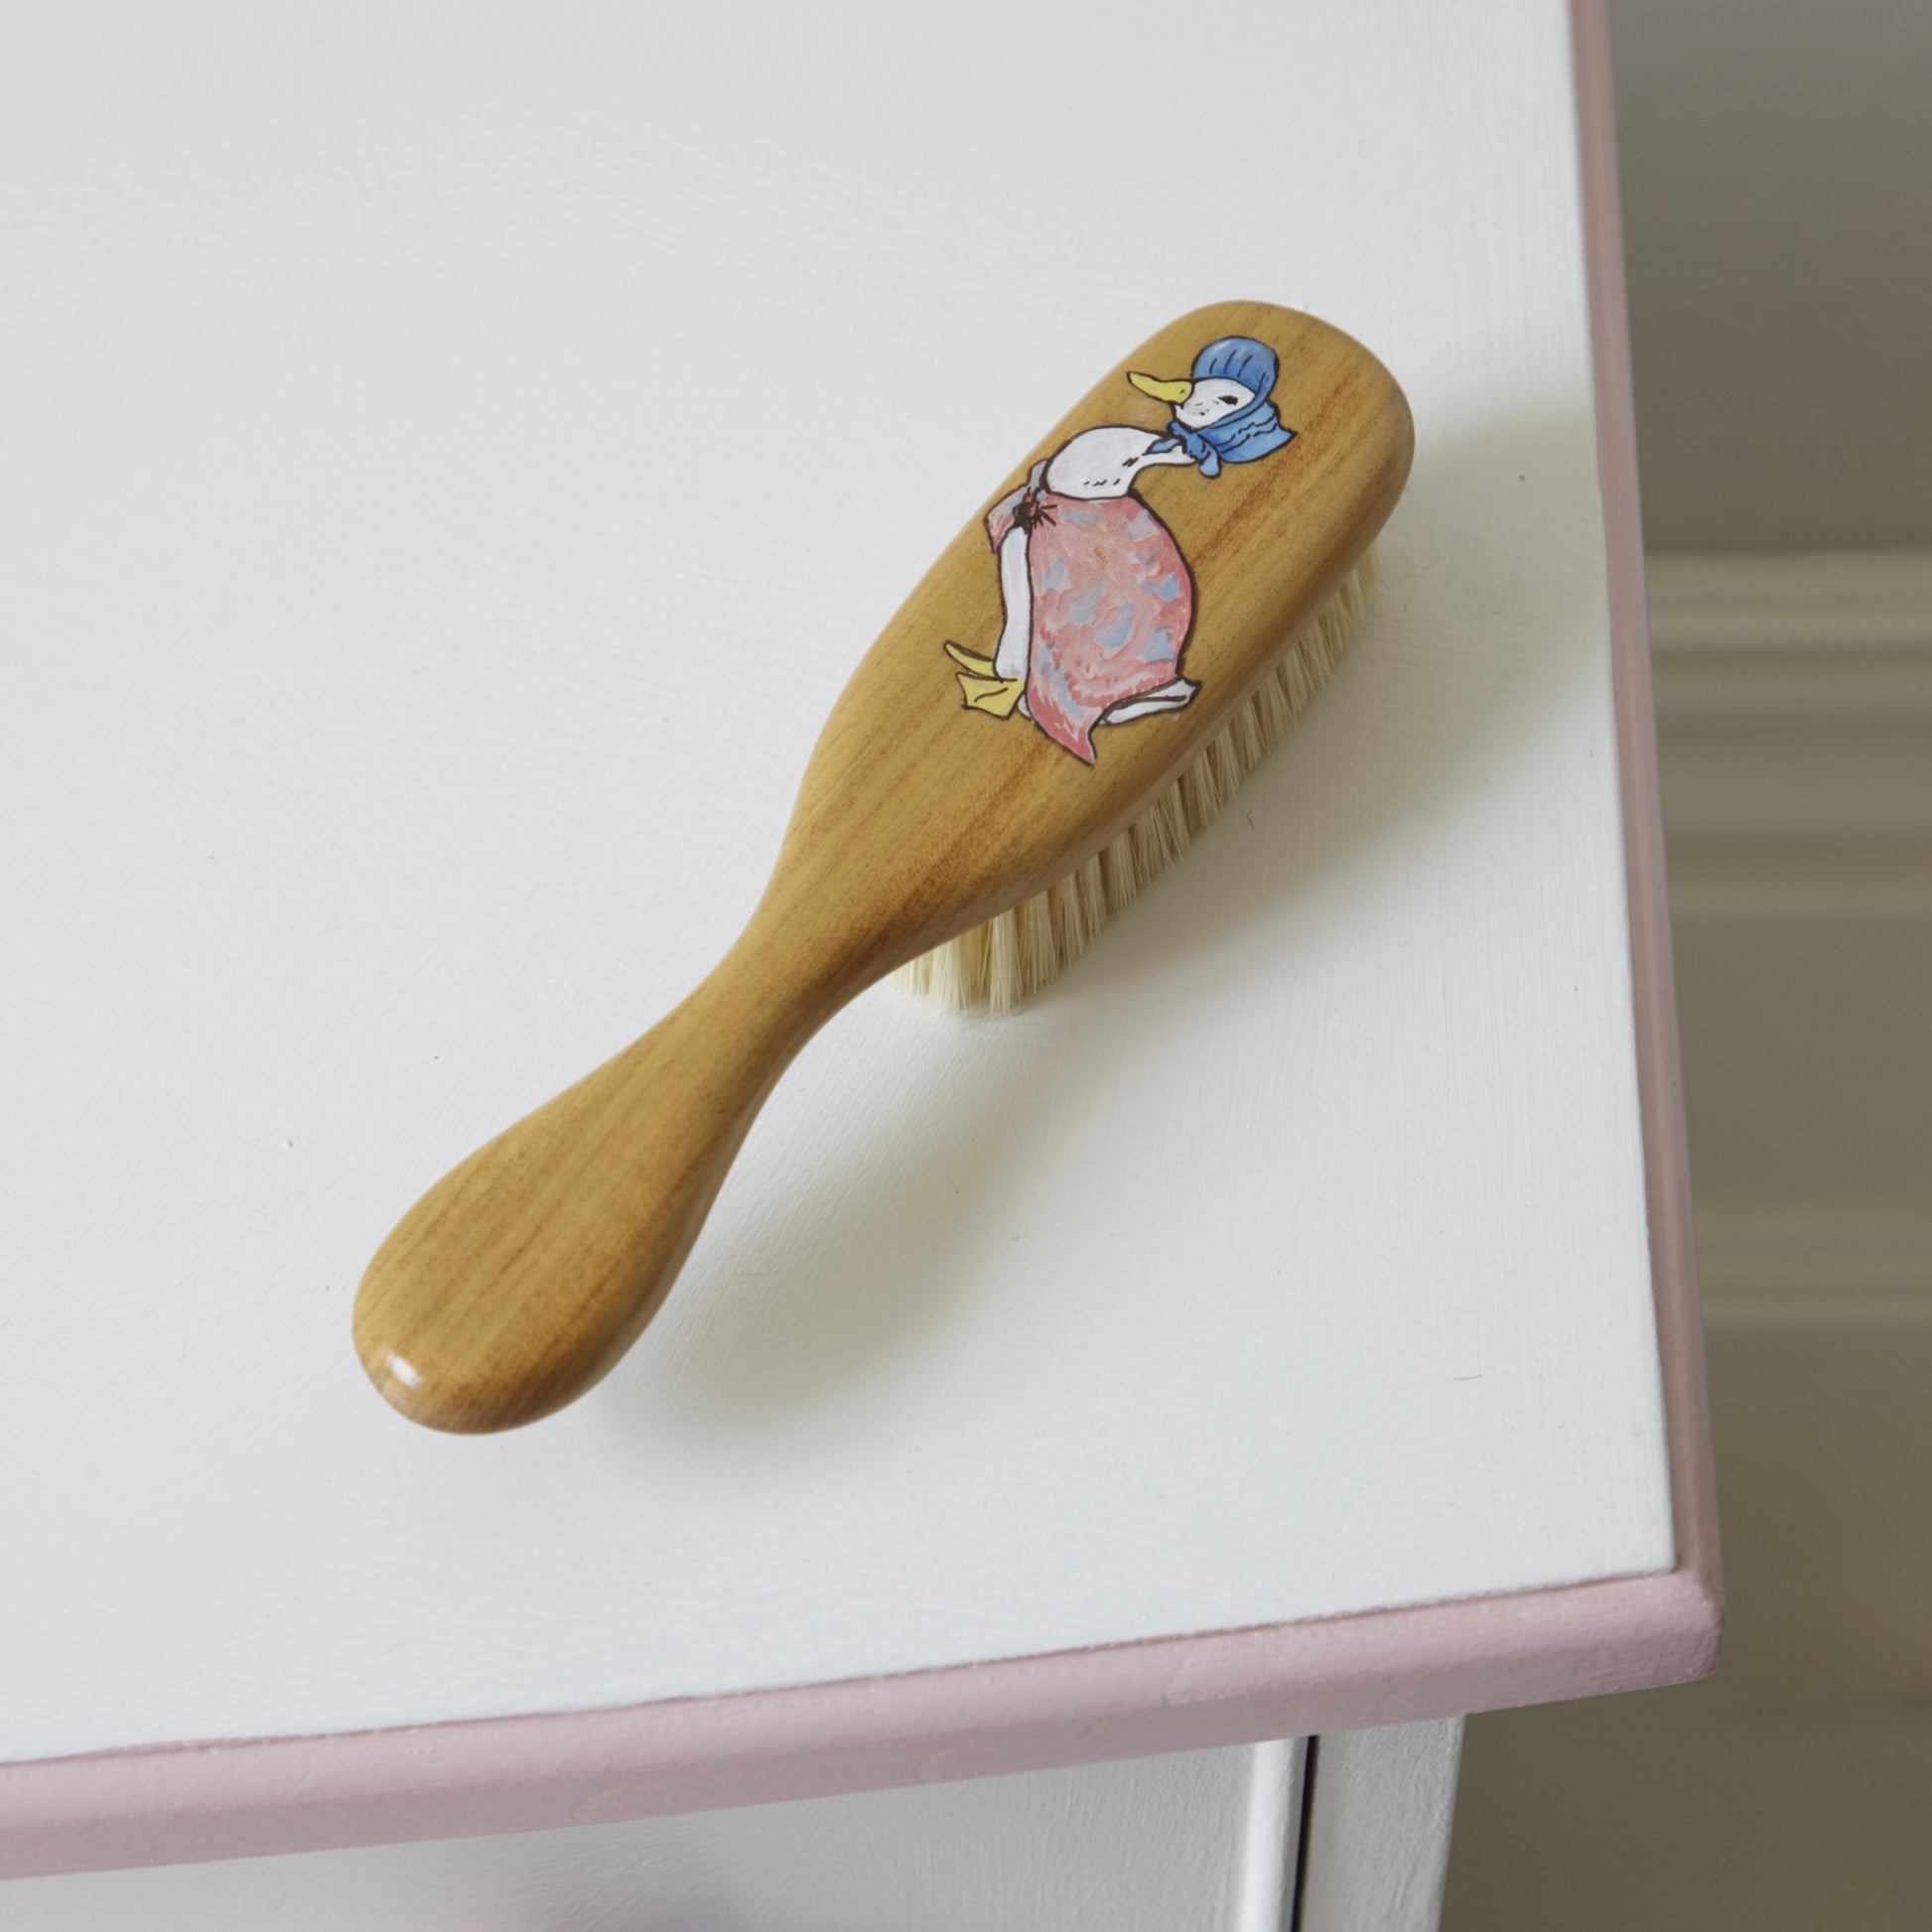 Baby Hairbrush - Beatrix Potter Jemima Puddleduck